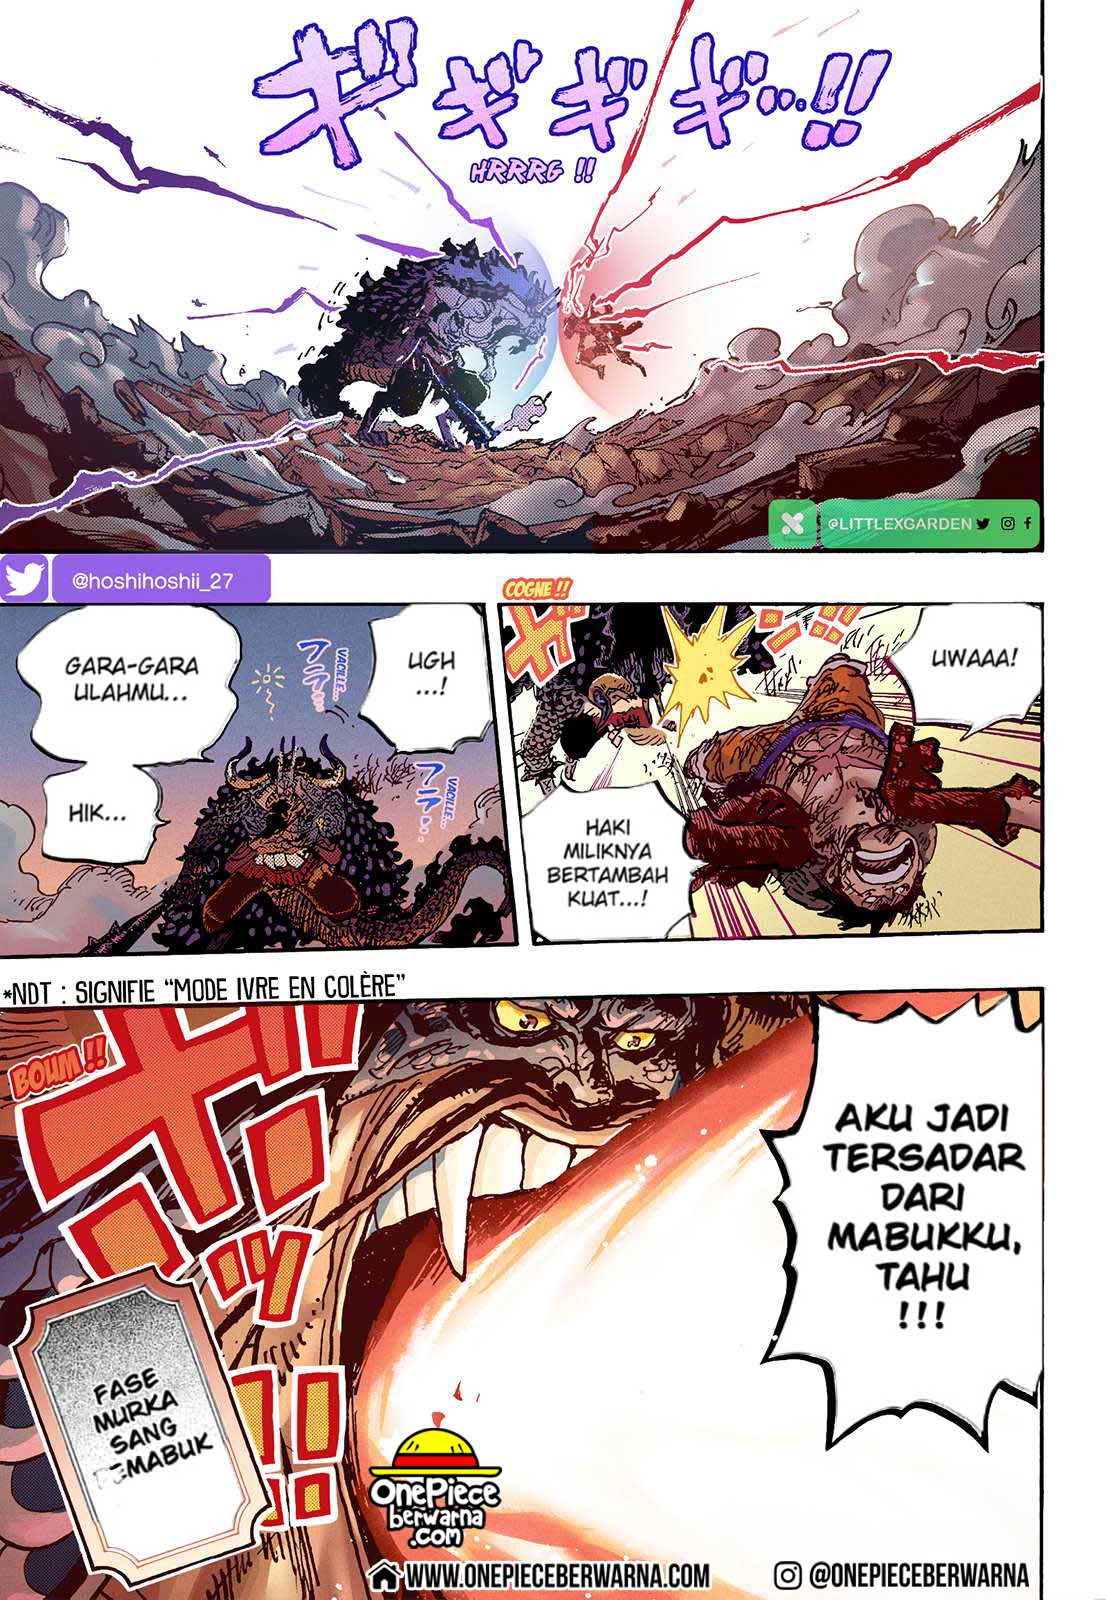 One Piece Berwarna Chapter 1035